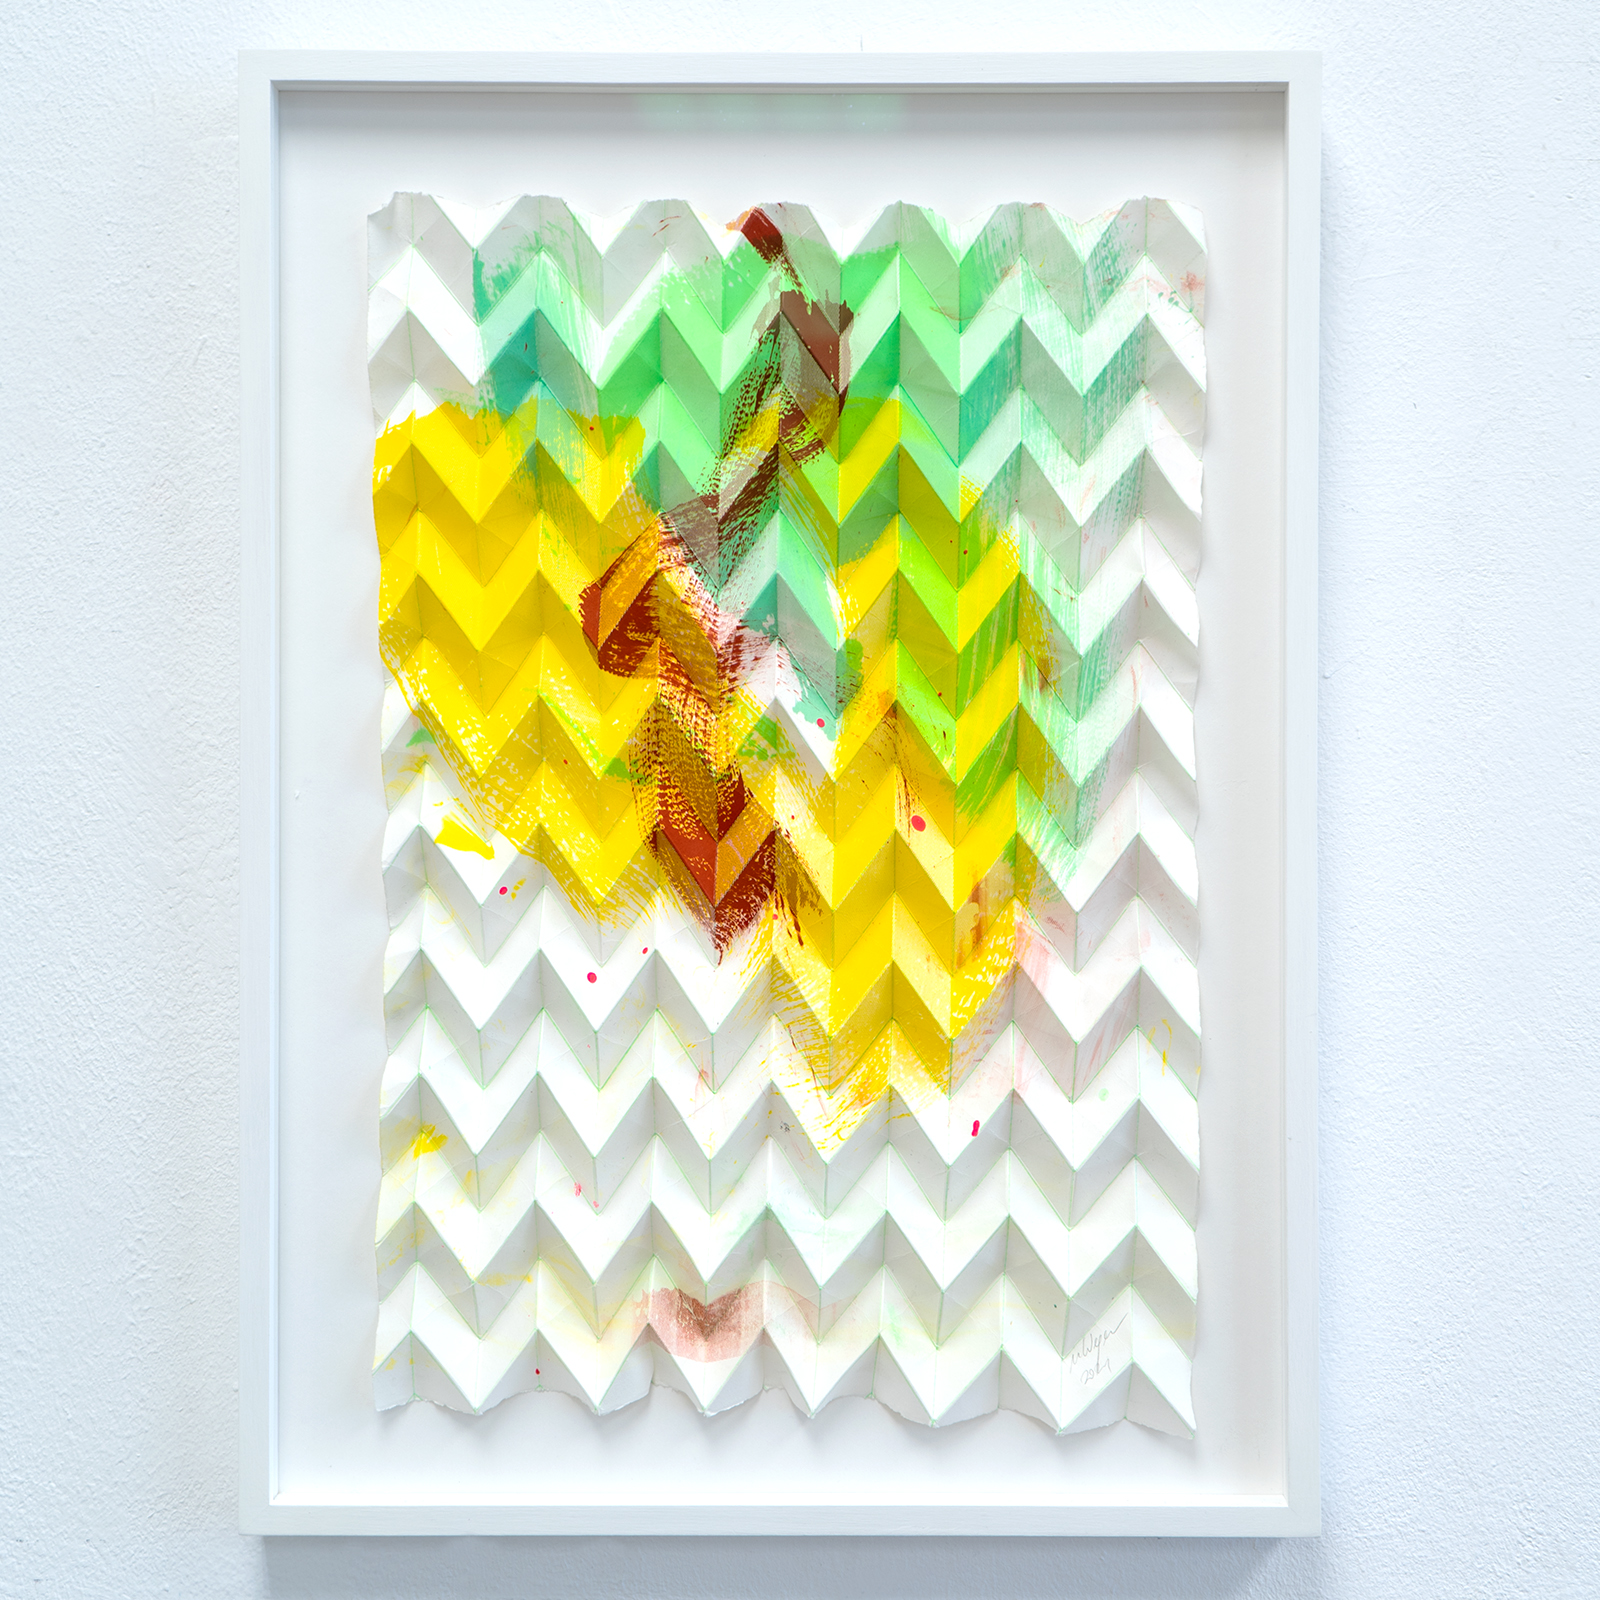 Michael Wegerer, Folded Gesture 3G Noll (yellow-green), 60x40 cm, Monotype, silkscreen, paper relief, folded, 2021